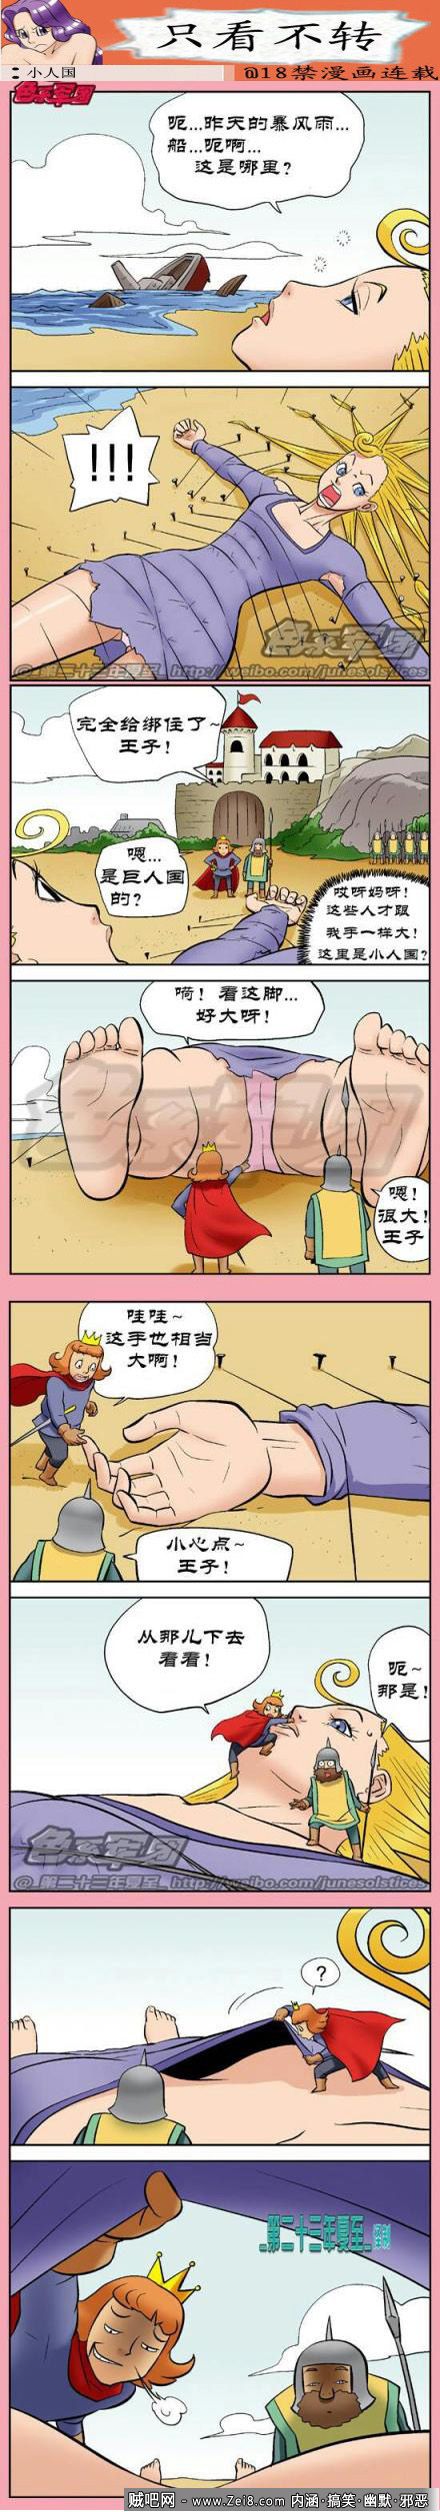 [小人国韩国漫画2014]：小人国奇遇记